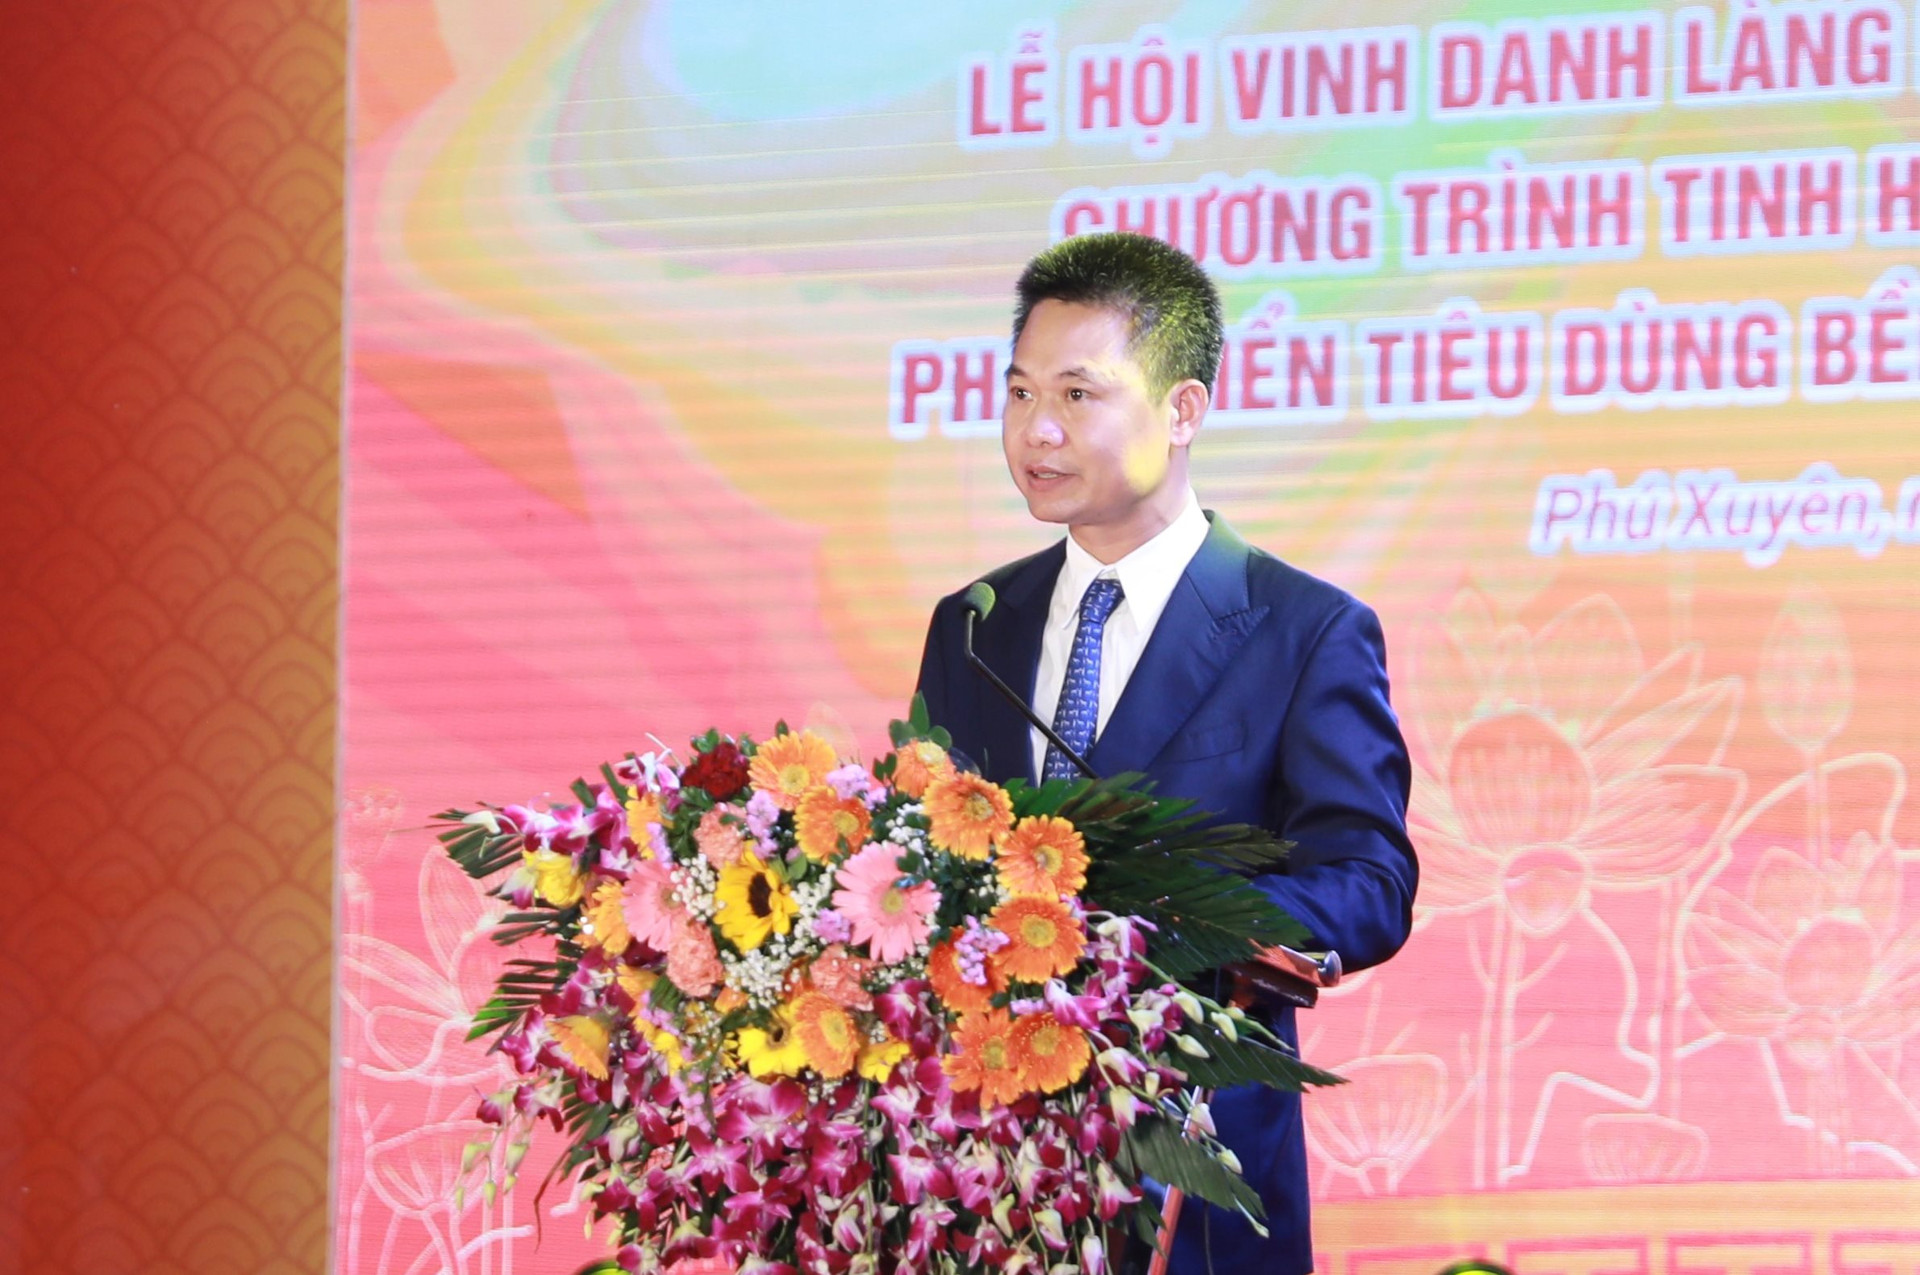 Hà Nội: 100 doanh nghiệp, 220 gian hàng tham gia Lễ hội vinh danh làng nghề huyện Phú Xuyên lần thứ IV năm 2023 - Ảnh 2.